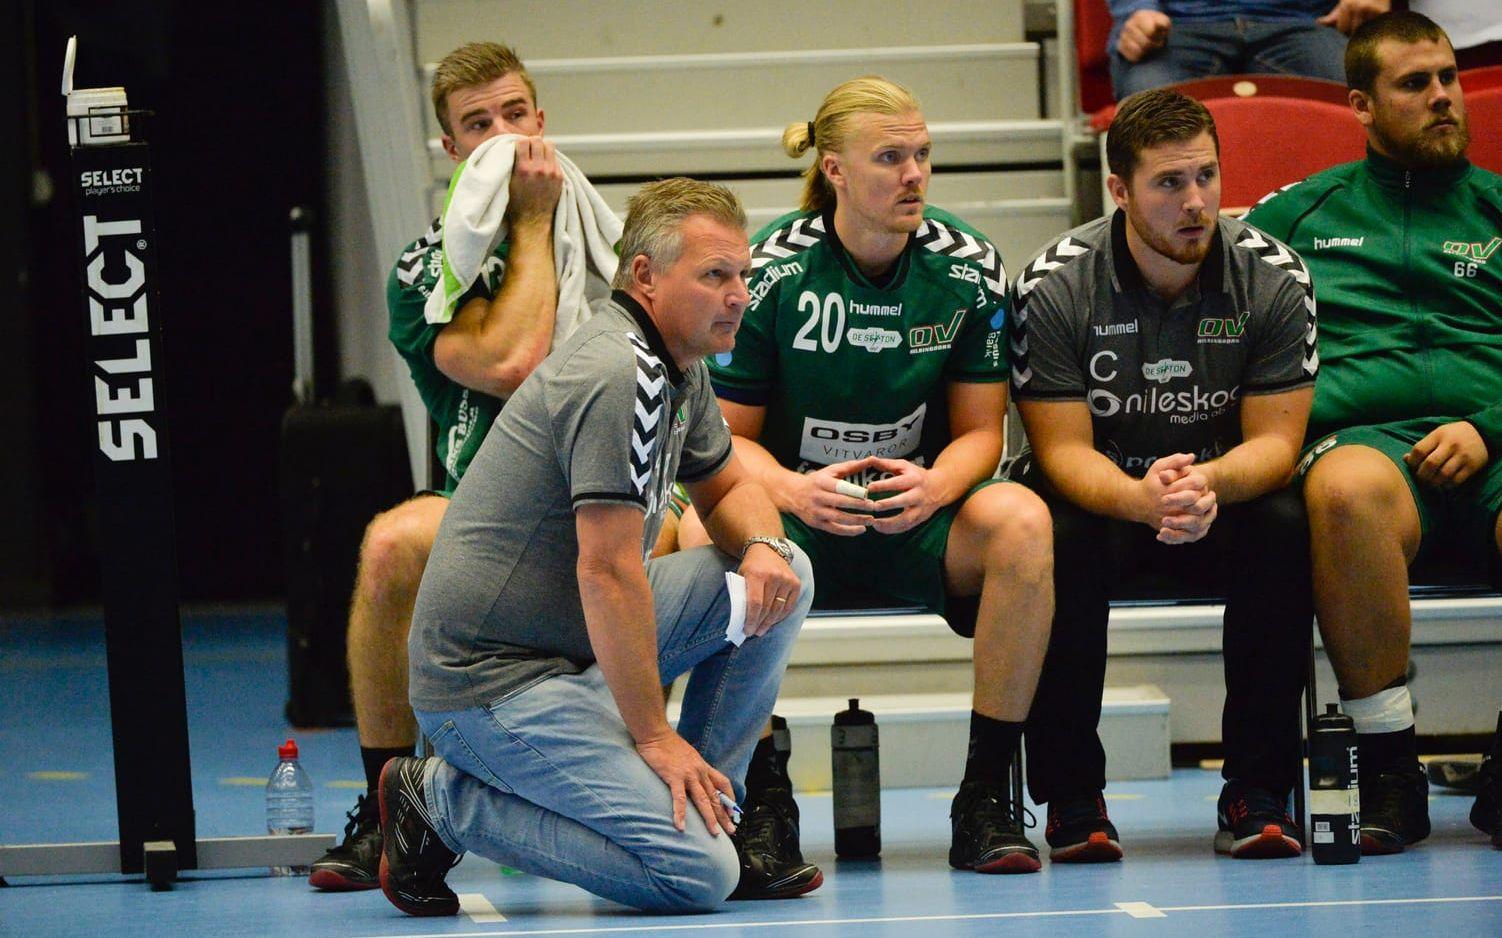 Väl förberedd. Drotts gamle guldtränare Ulf Sivertsson var tillbaka i Halmstad arena med sitt nya lag, favorittippade Helsingborg. Och ”Tubbi” hade gjort läxan. OV hade svar på samtliga frågor som Drott ställde. Bild: Jari Välitalo